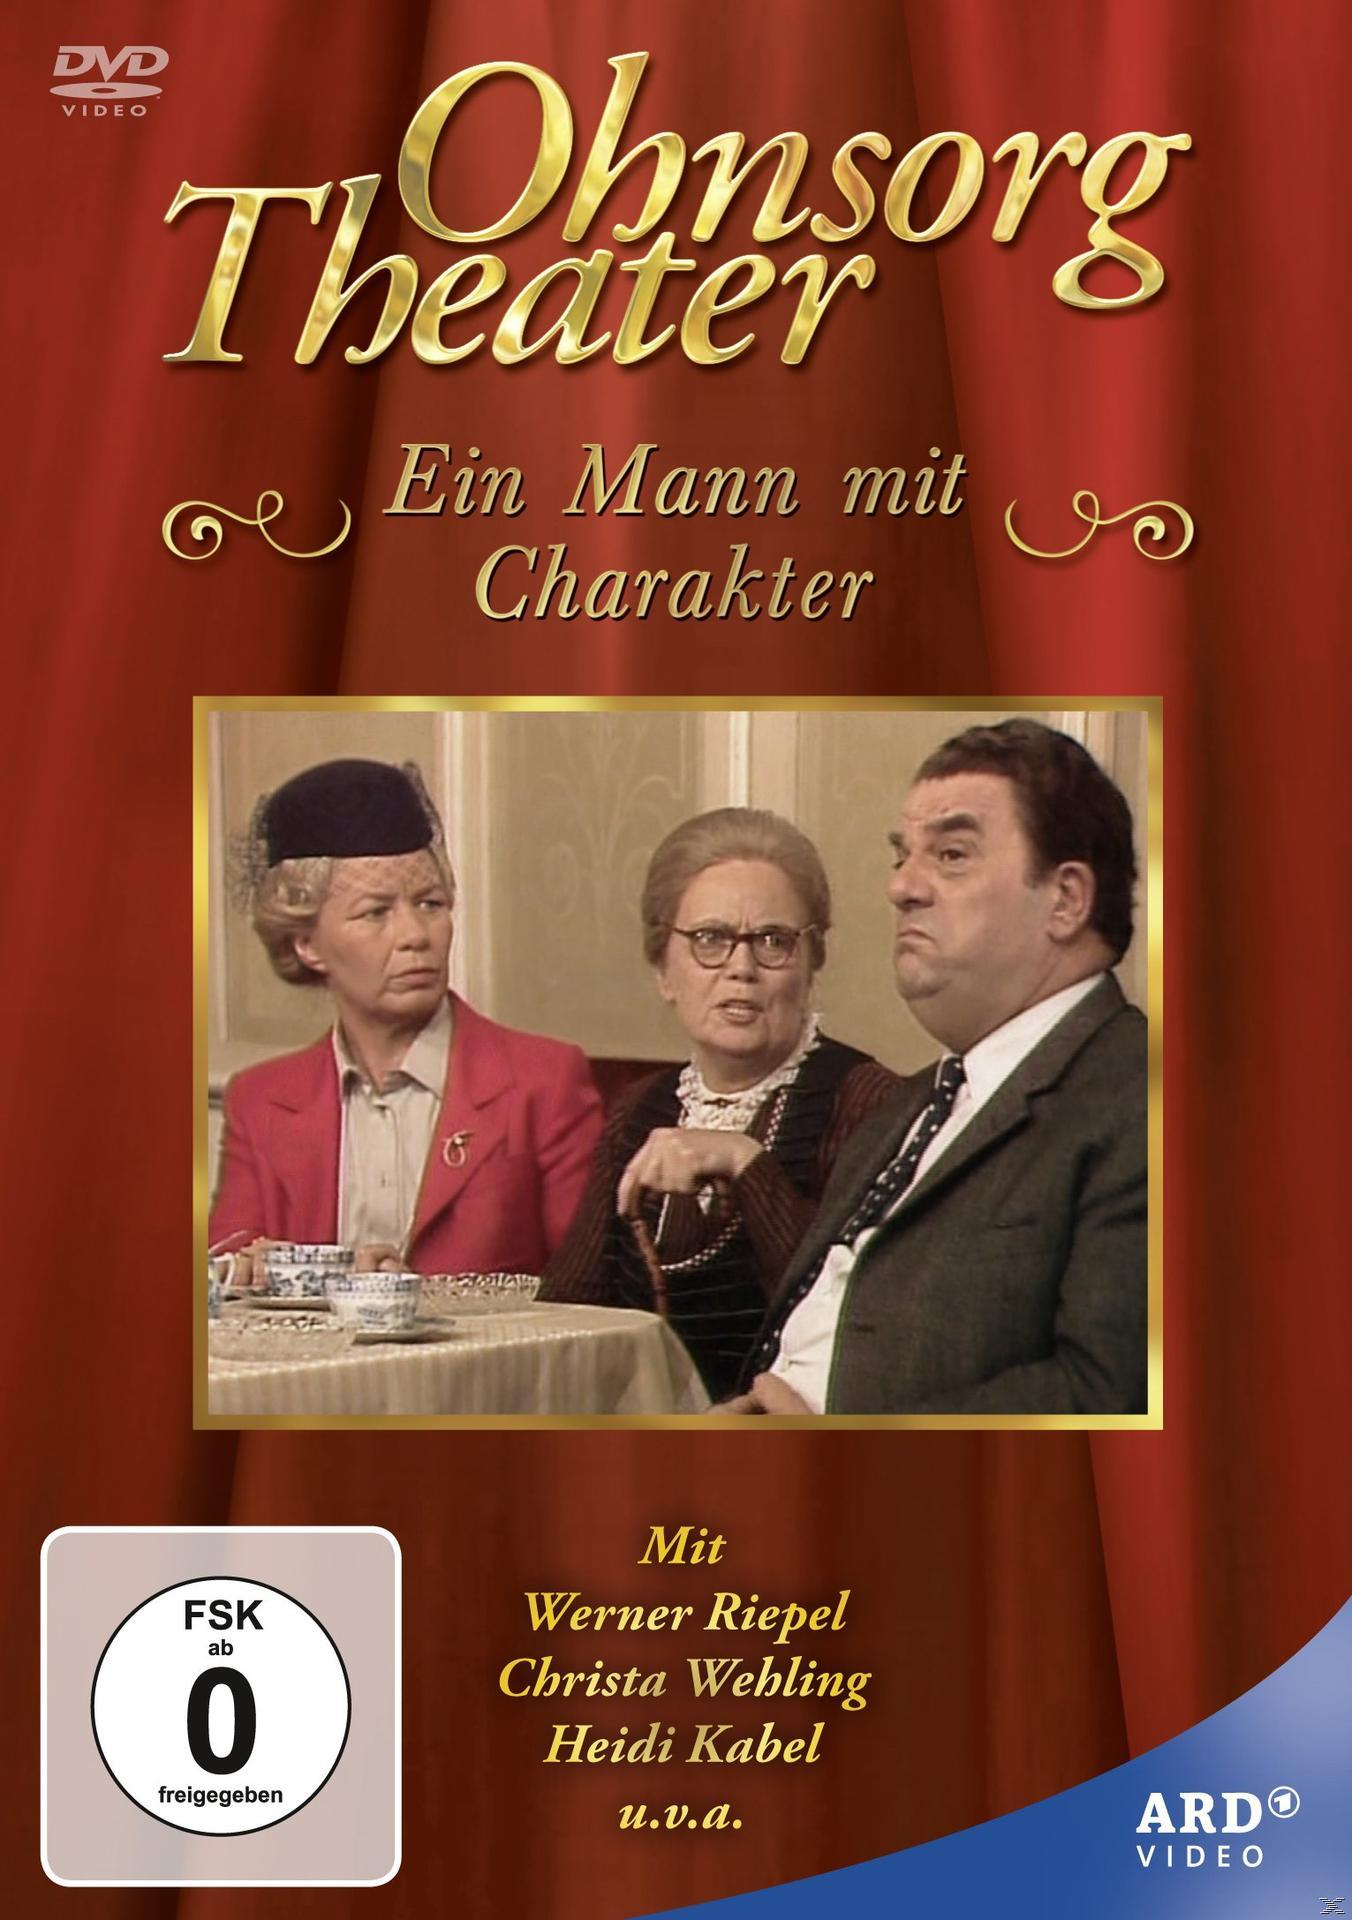 Ohnsorg Theater DVD - mit Charakter Mann Ein